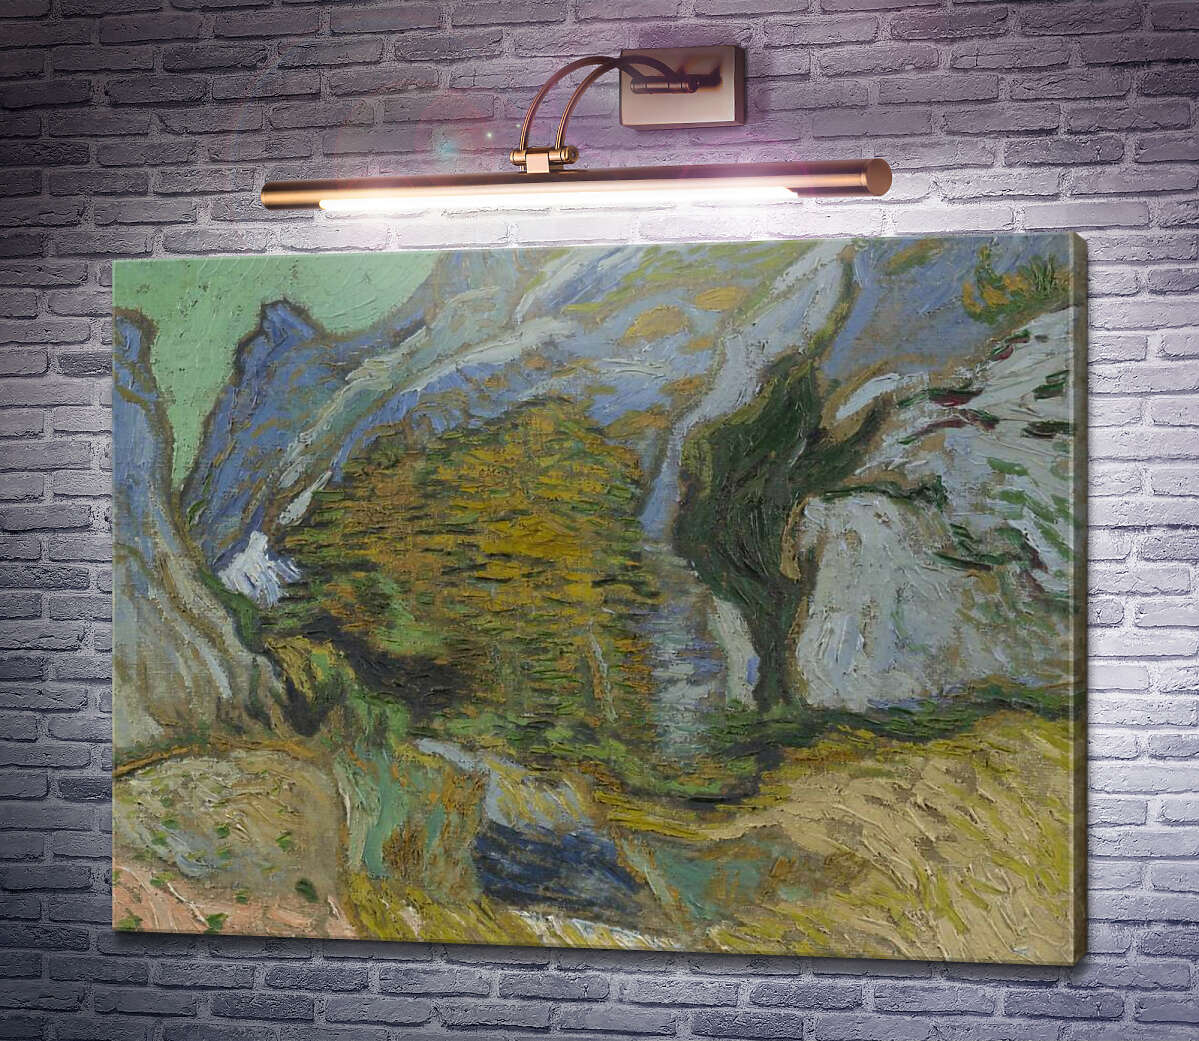 Картина Овраг с небольшим ручьем (Ravine with a Small Stream), 1889 Винсент Ван Гог